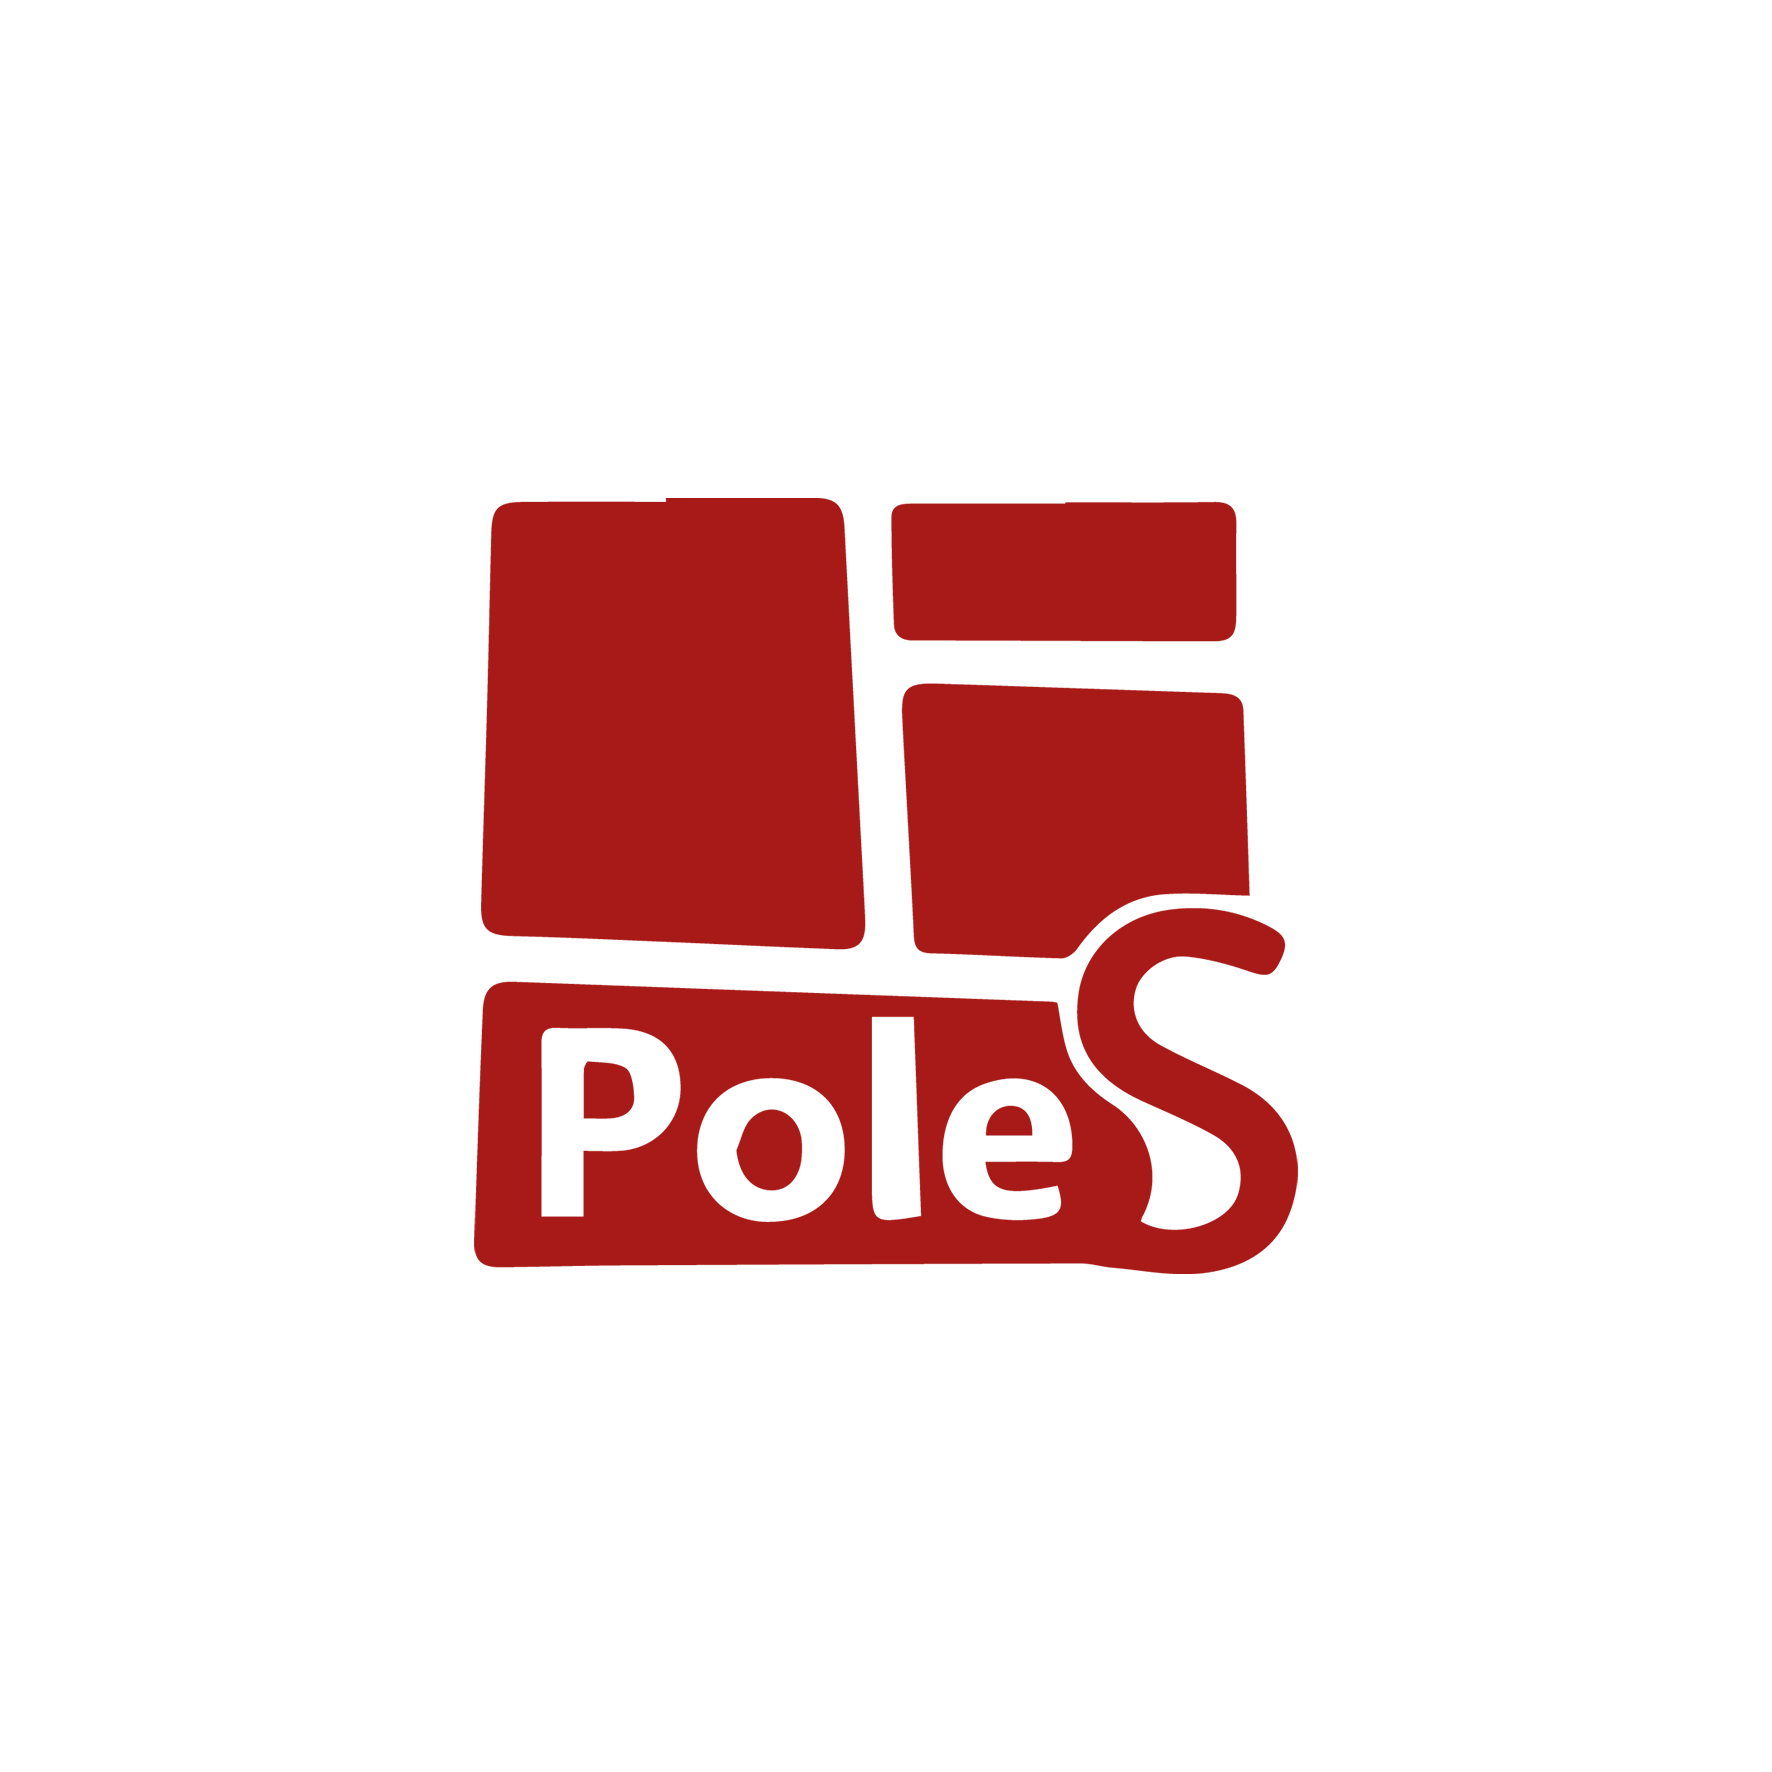 PoleS